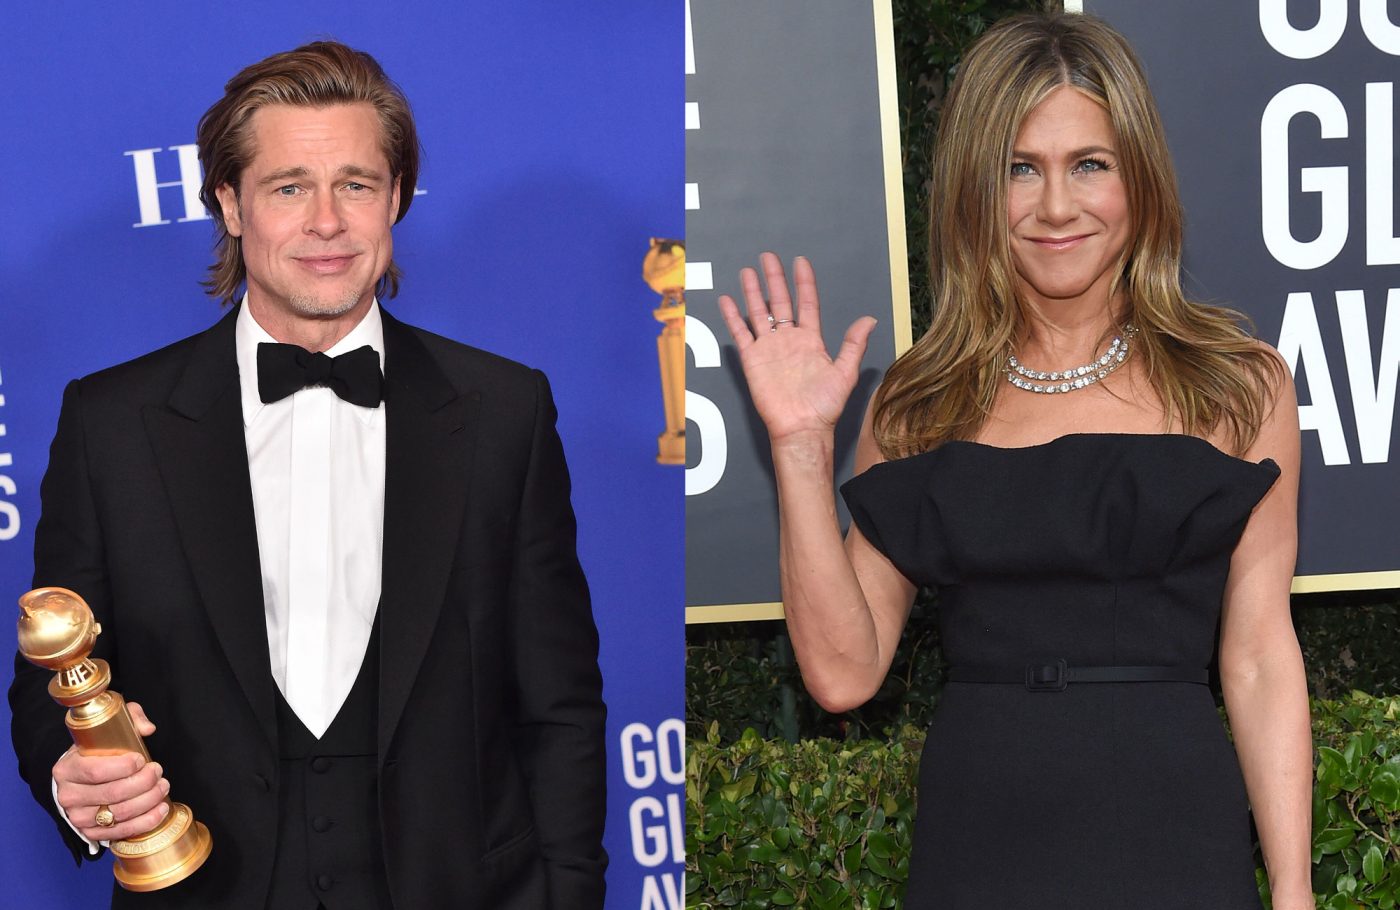 Golden Globes 2020, Brad Pitt e Jennifer Aniston molto vicini all’After Party: le foto fanno il giro del web